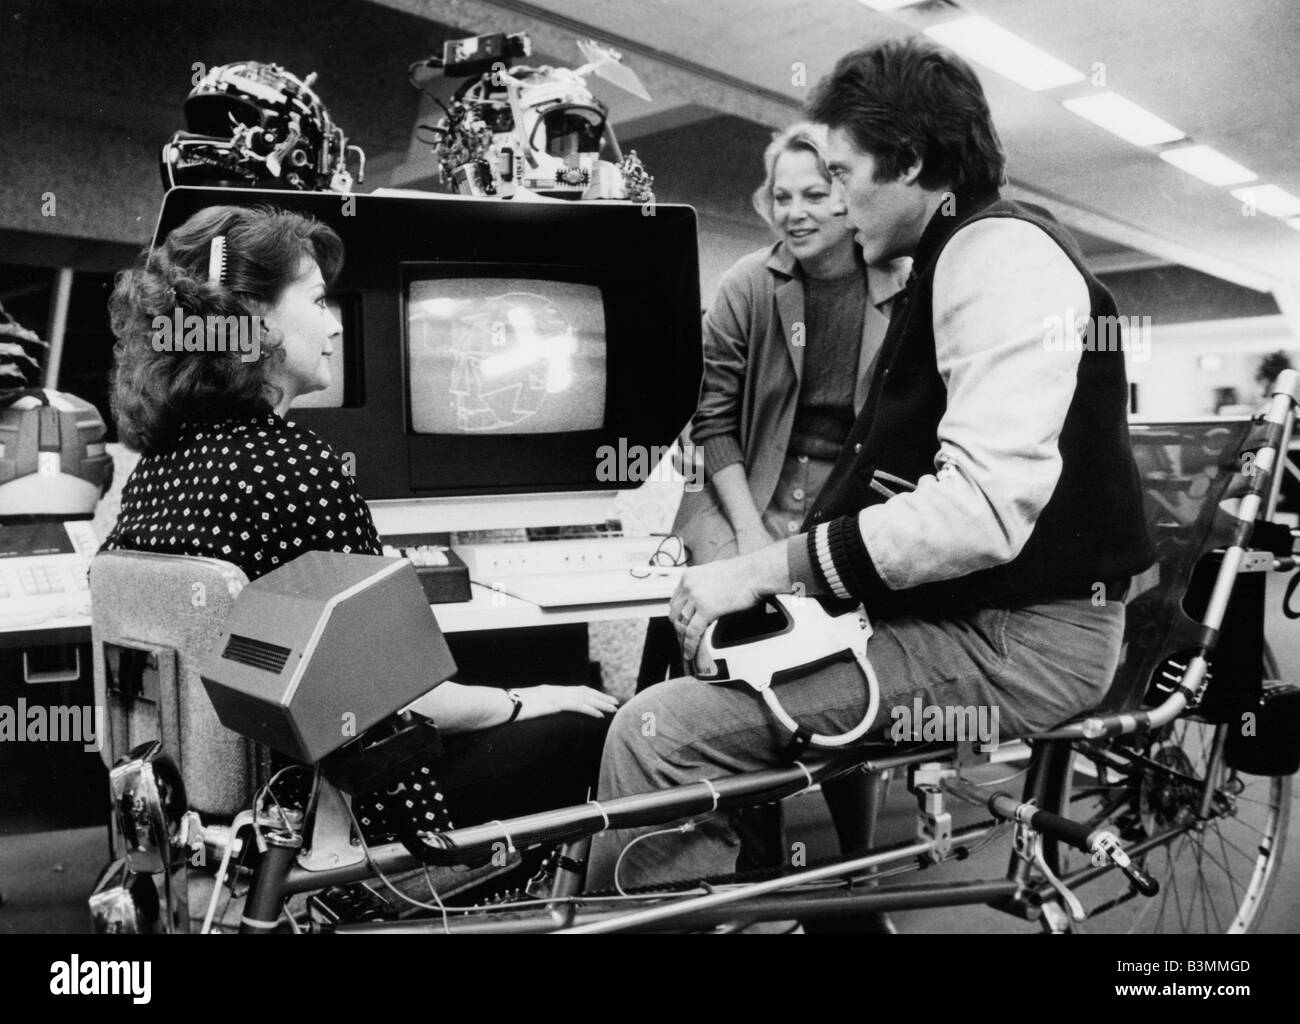 Faites un remue-méninges 1983 MGM film avec Natalie Wood à gauche et Christopher Walken Banque D'Images